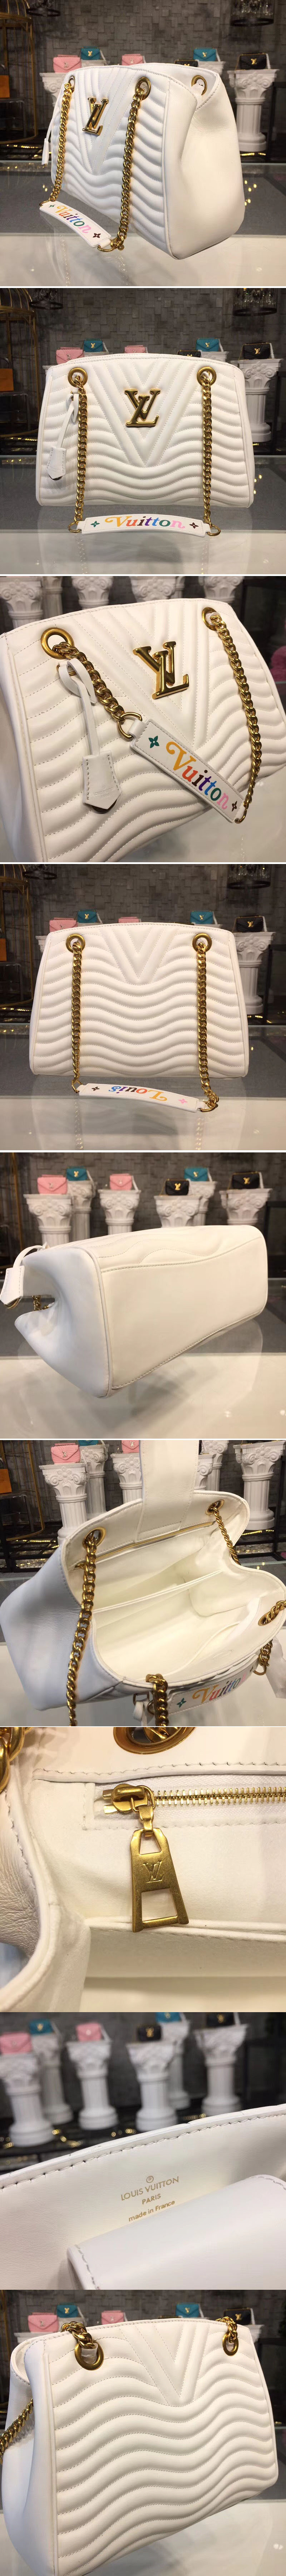 Replica Louis Vuitton M51978 LV New Wave Chain Tote Bags White